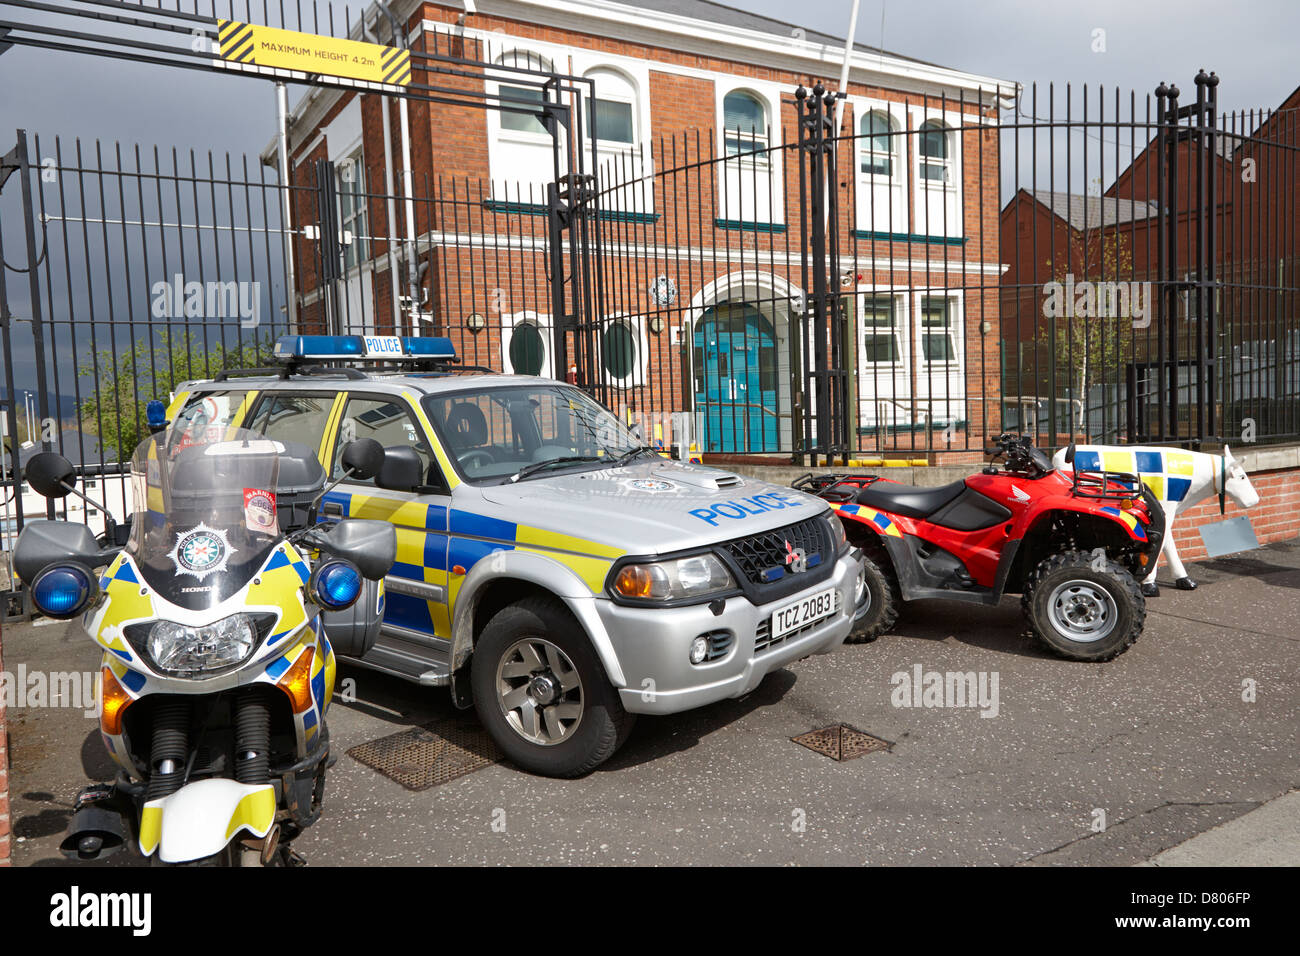 Selezione dei veicoli della polizia sul display esterno holywood stazione di polizia su un open day Foto Stock